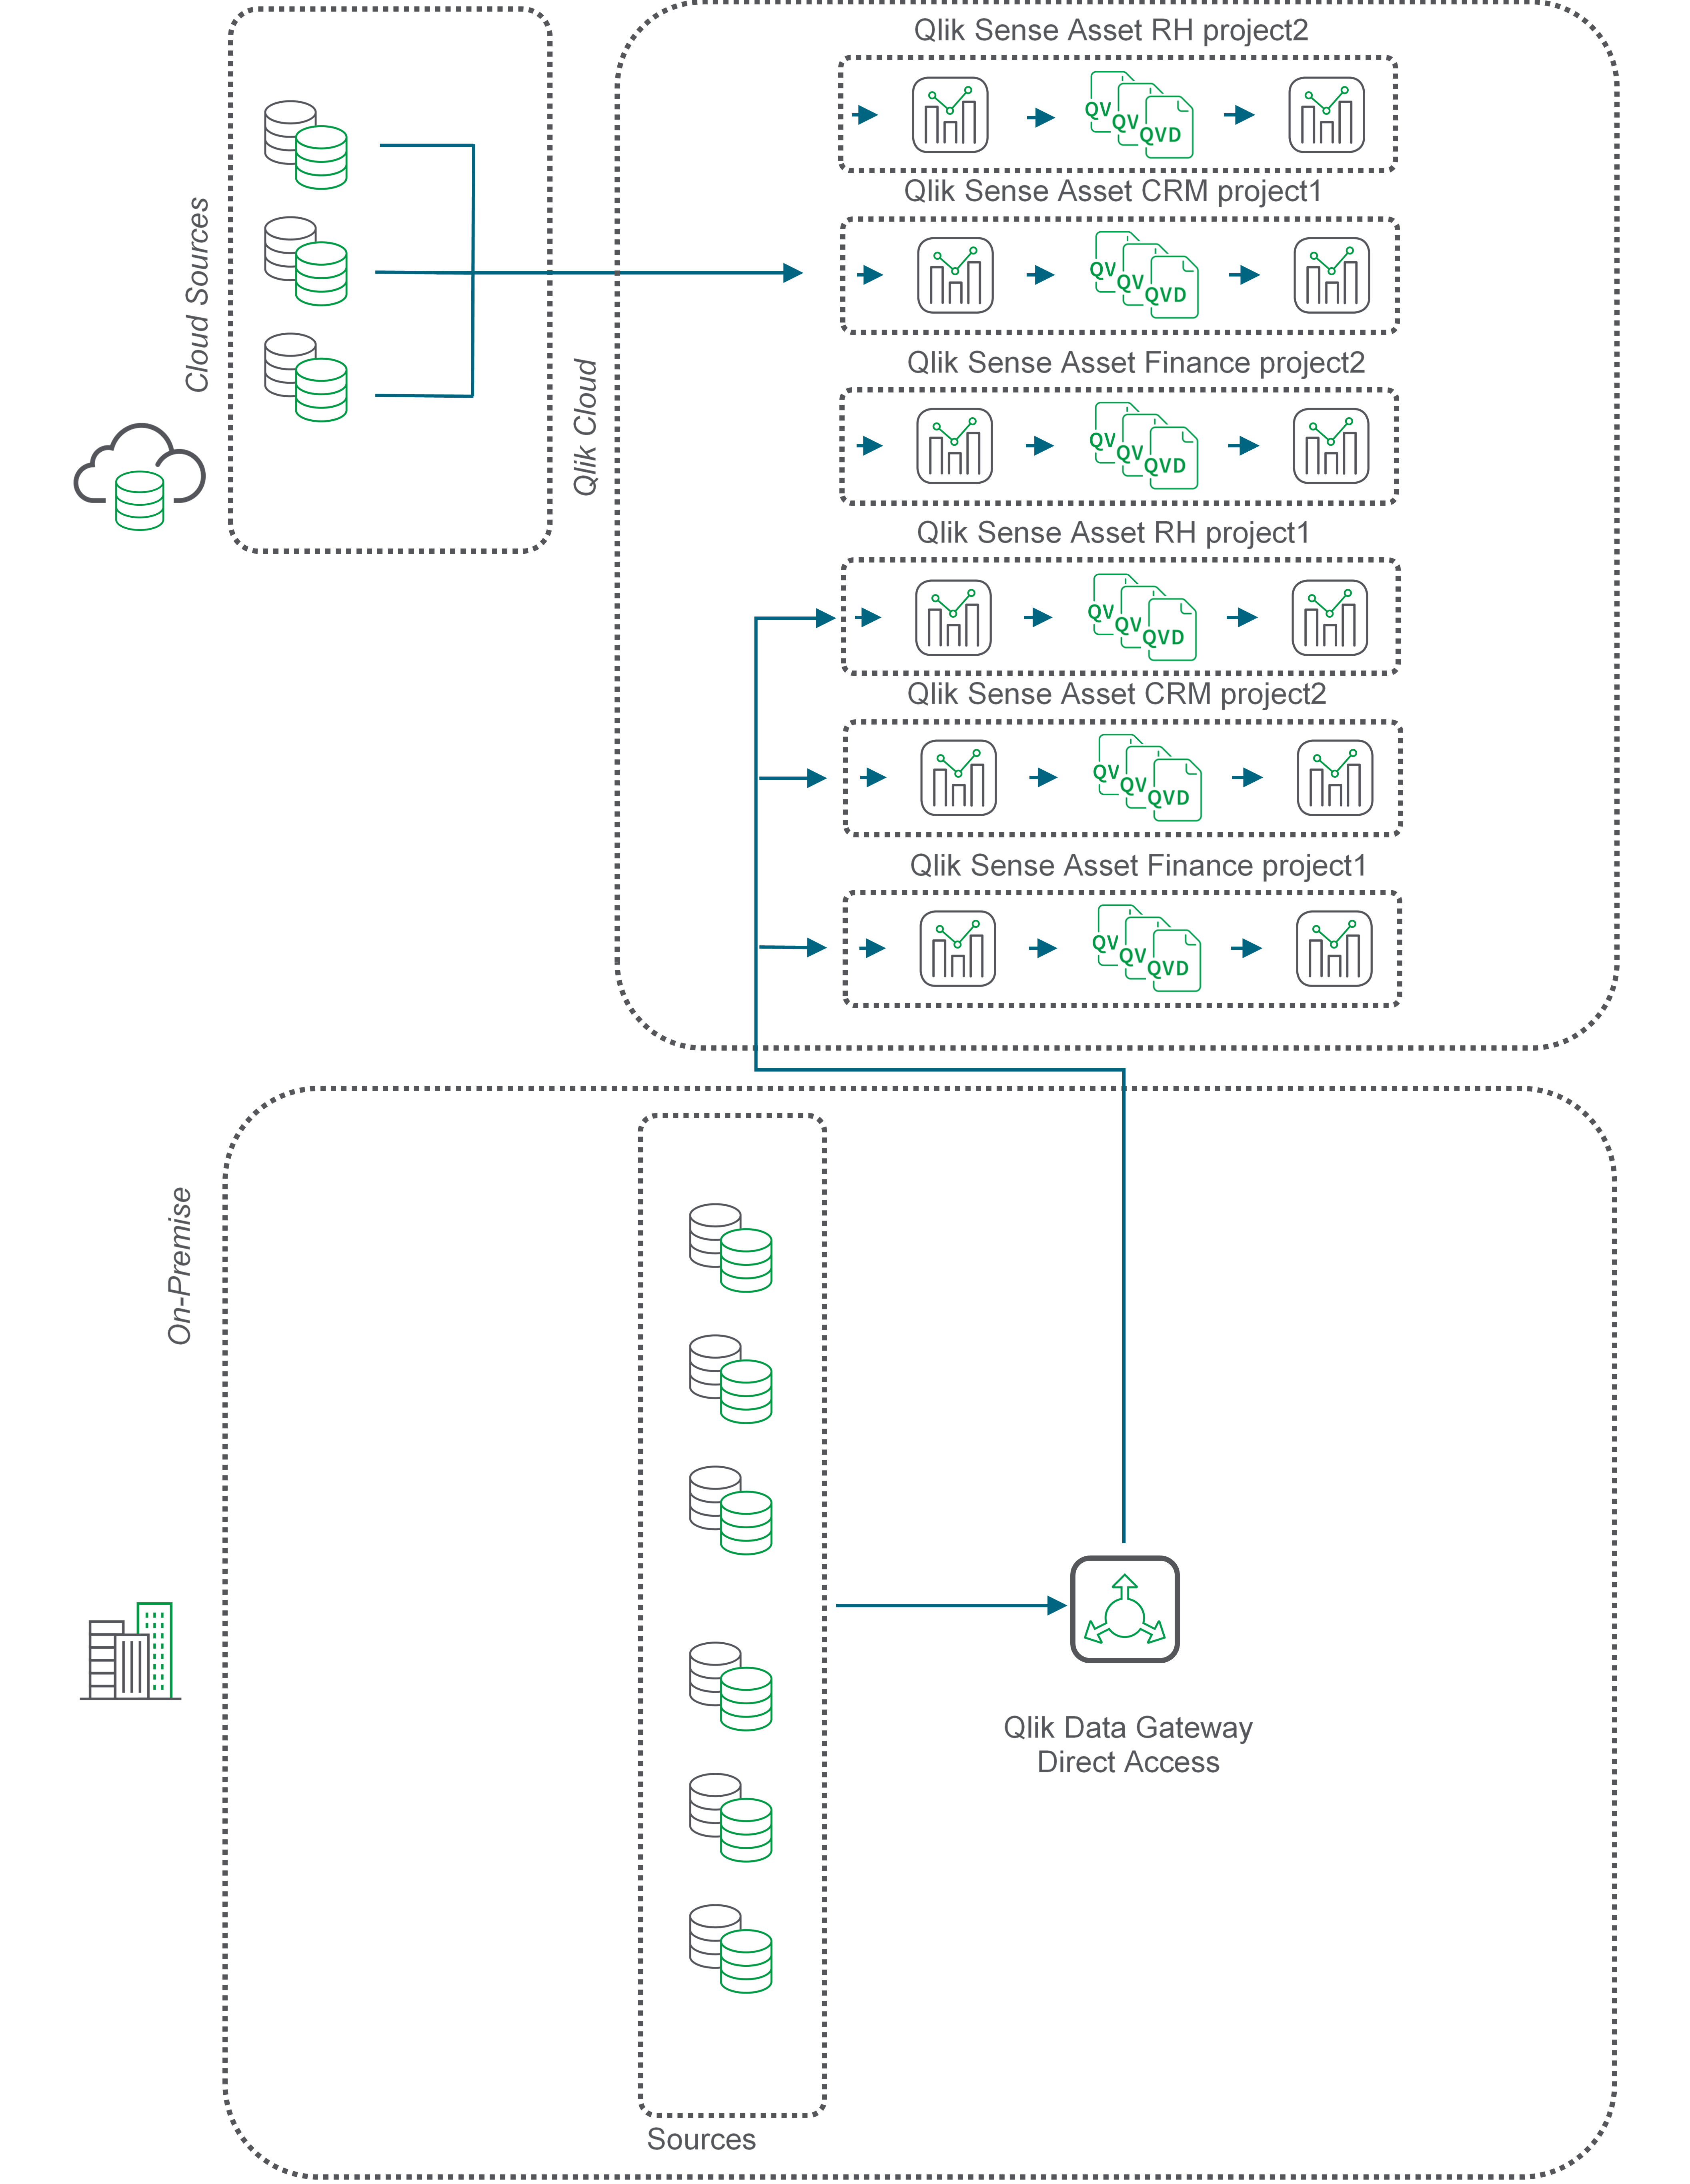 Das Flussdiagramm beschreibt die QVD-Verschiebung über Qlik Data Gateway – Direkter Zugriff.